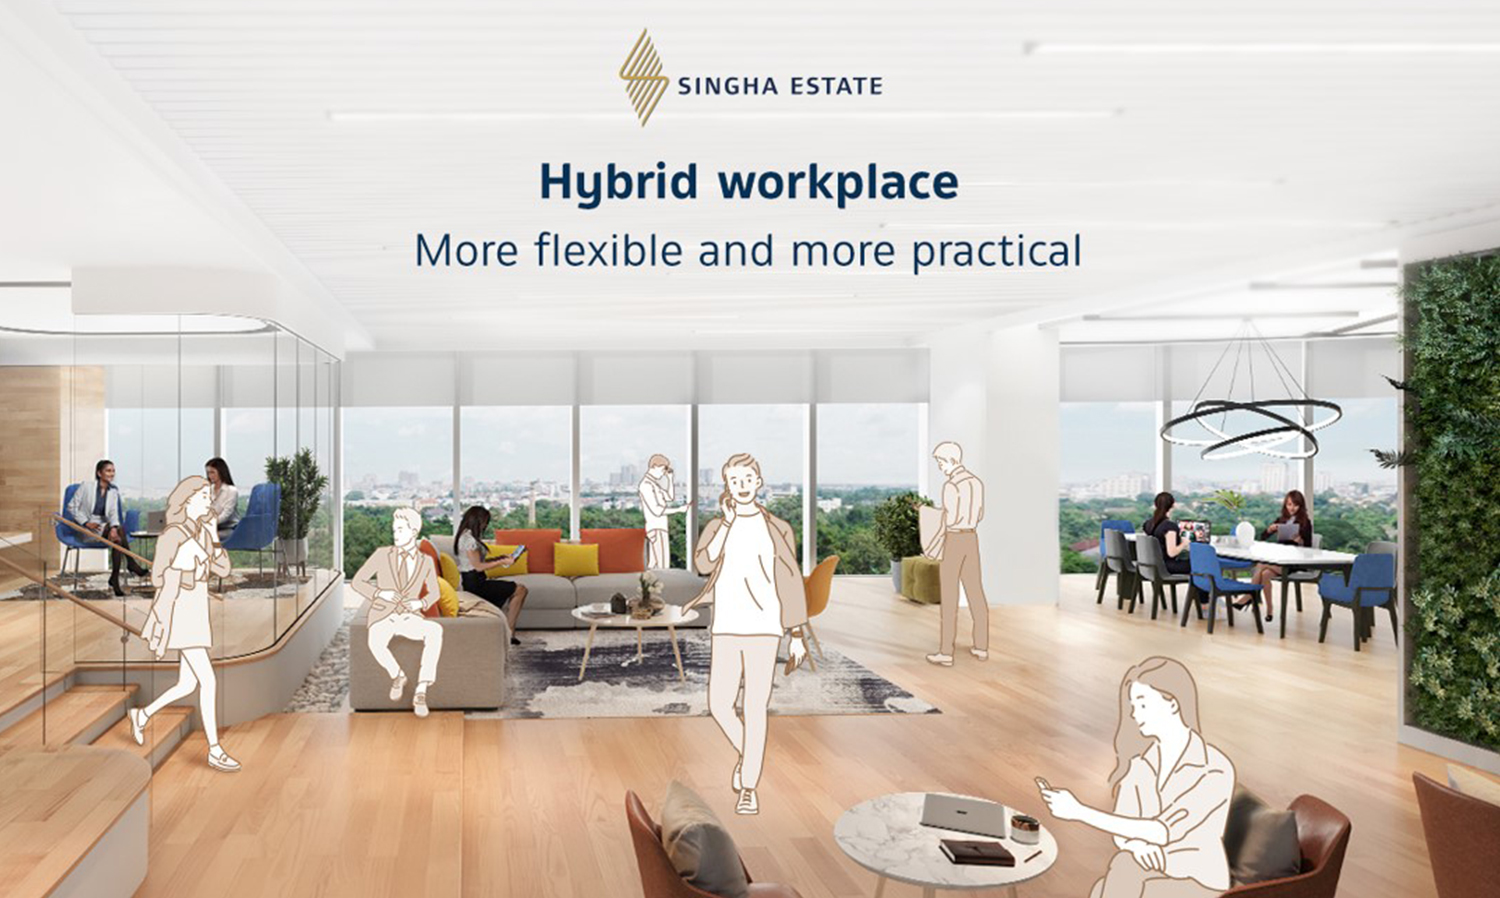 Hybrid Work Model โลกแห่งอนาคตอาคารสำนักงาน สิงห์ เอสเตท ปั้น เอส โอเอซิส รับวัฒนธรรมการทำงานยุคใหม่